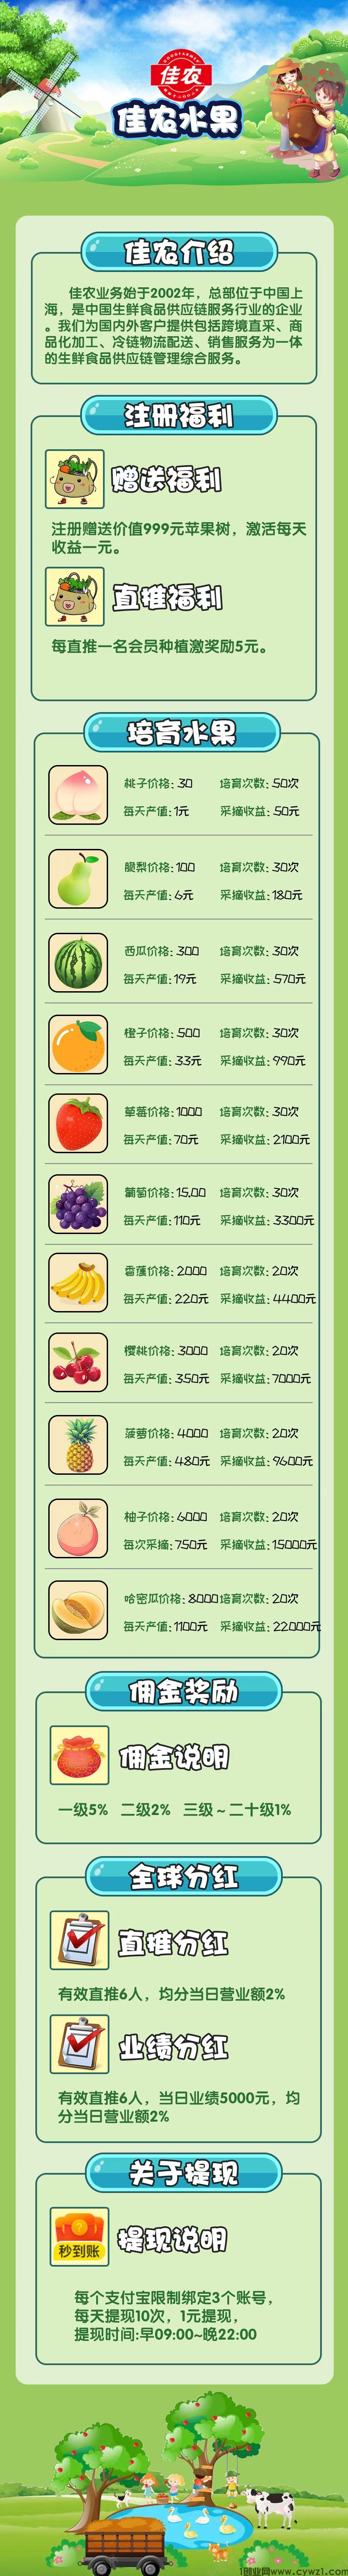 佳农水果3.jpg